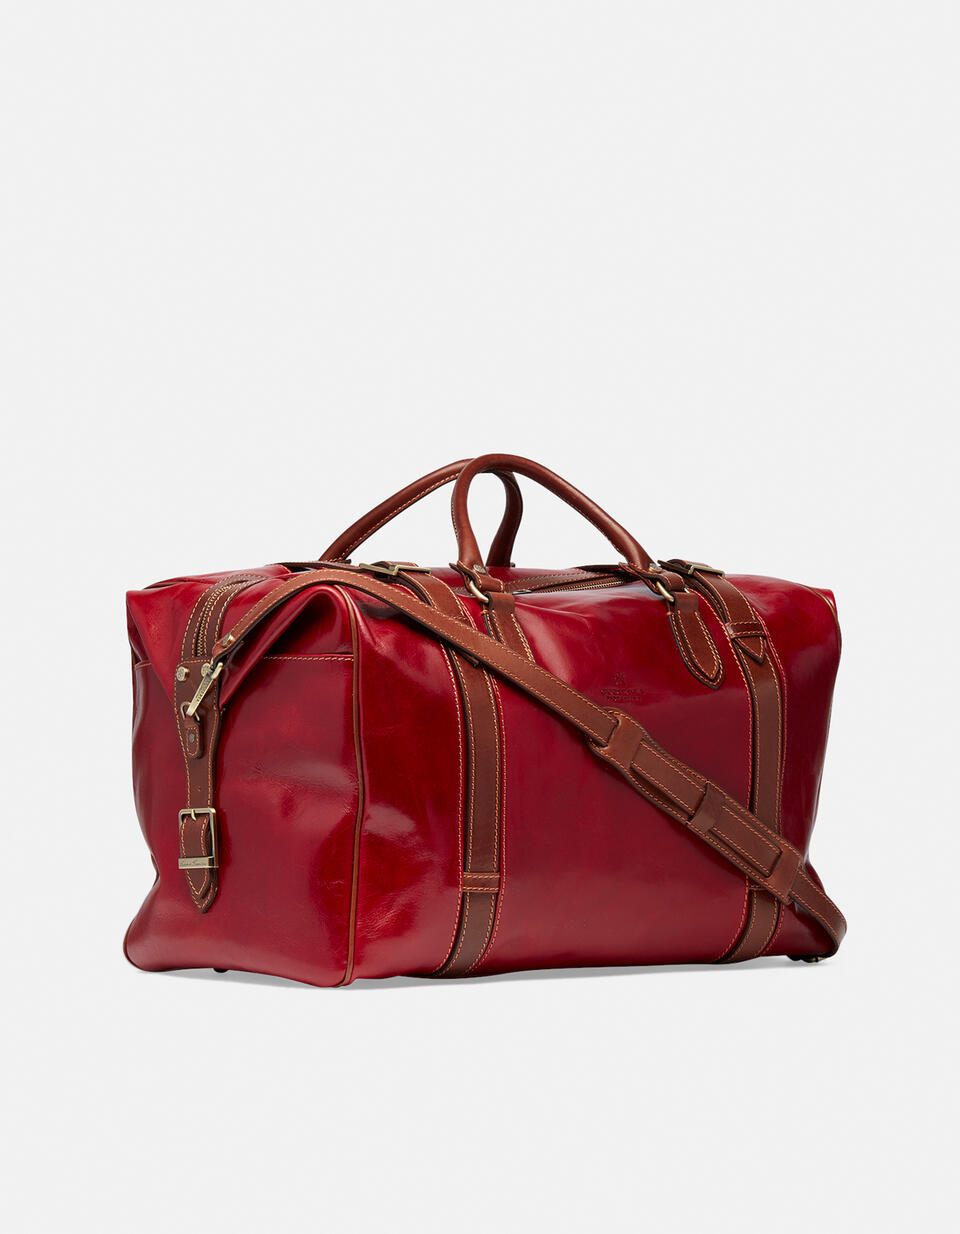 Weekender ROSSOBICOLORE  - Luggage - Travel Bags - Cuoieria Fiorentina